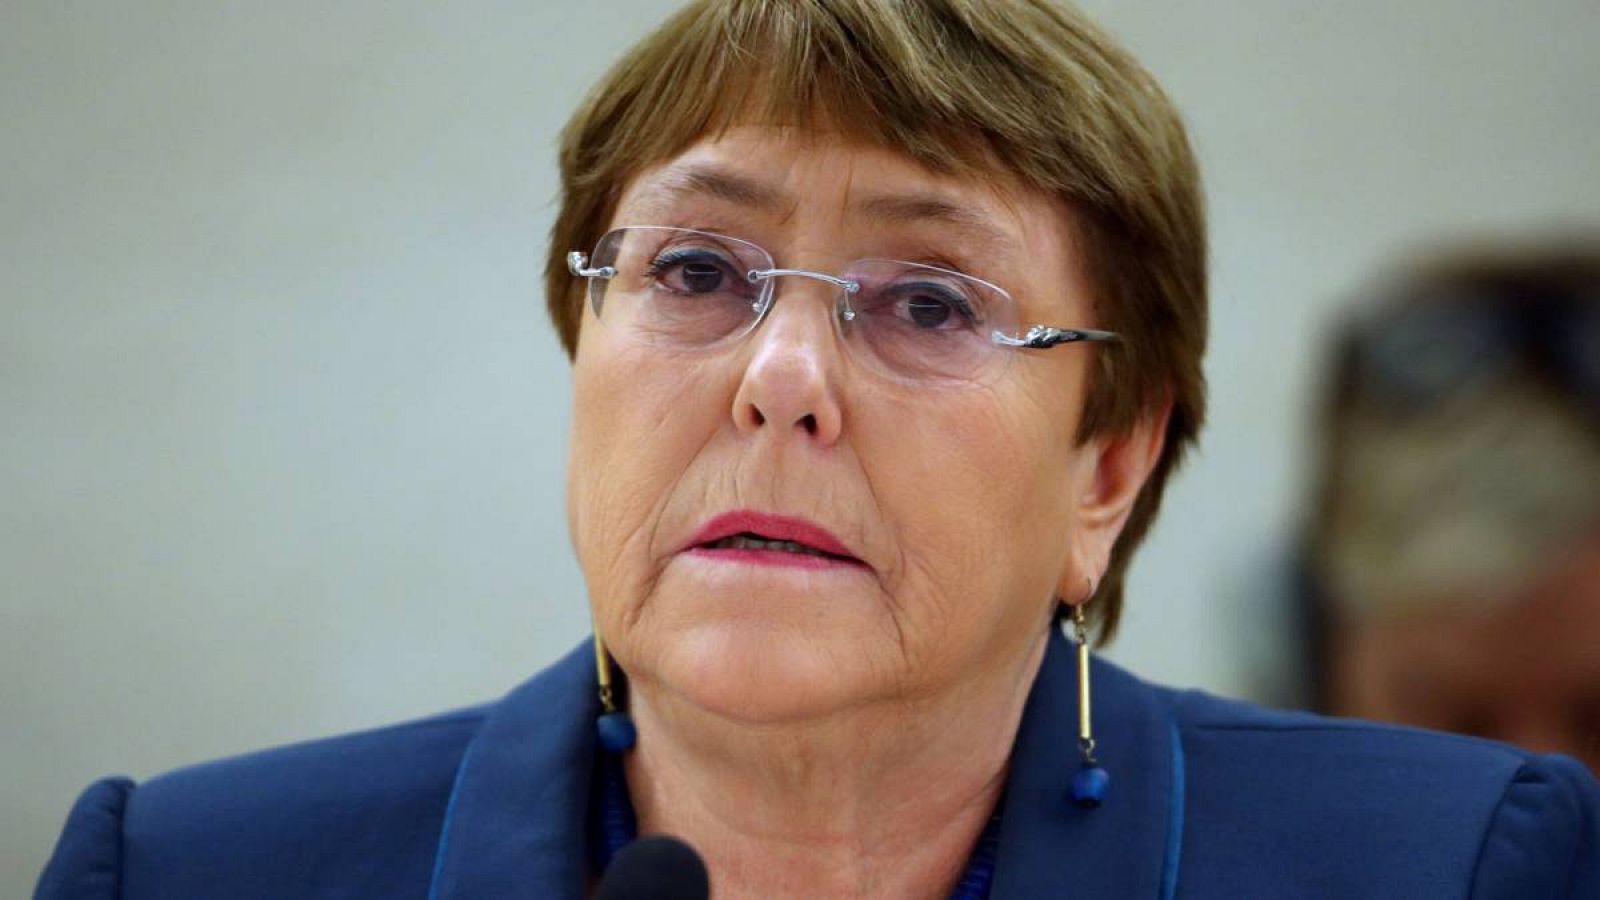 La Alta Comisionada de las Naciones Unidas para los Derechos Humanos, Michelle Bachelet, asiste a una sesión del Consejo de Derechos Humanos en las Naciones Unidas en Ginebra, Suiza. (Foto de archivo). 